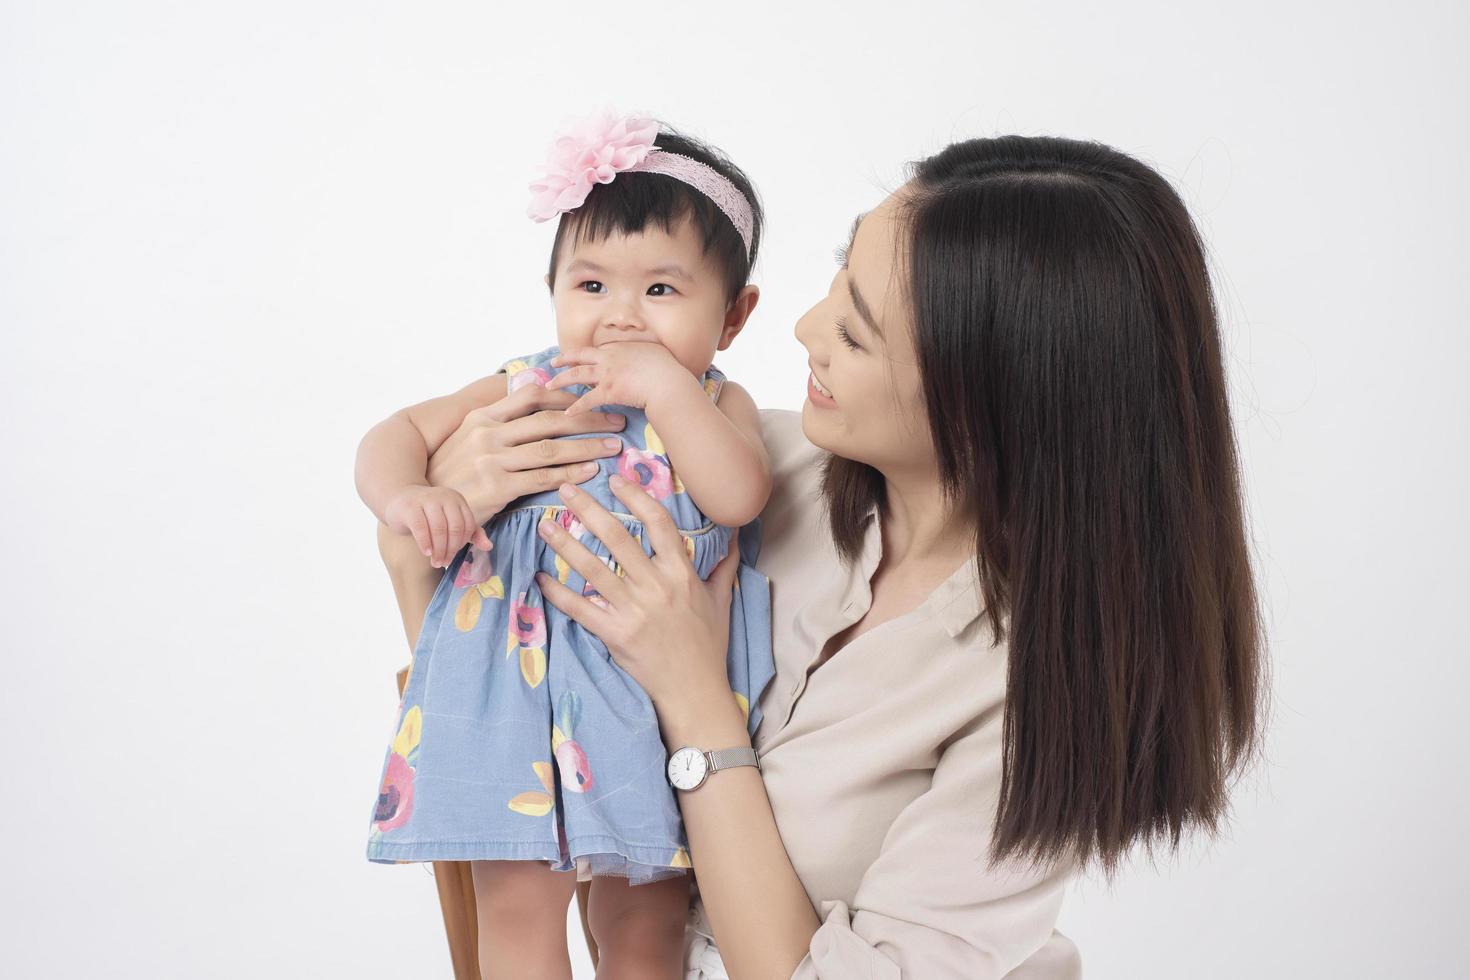 mère asiatique et adorable petite fille sont heureuses sur fond blanc photo